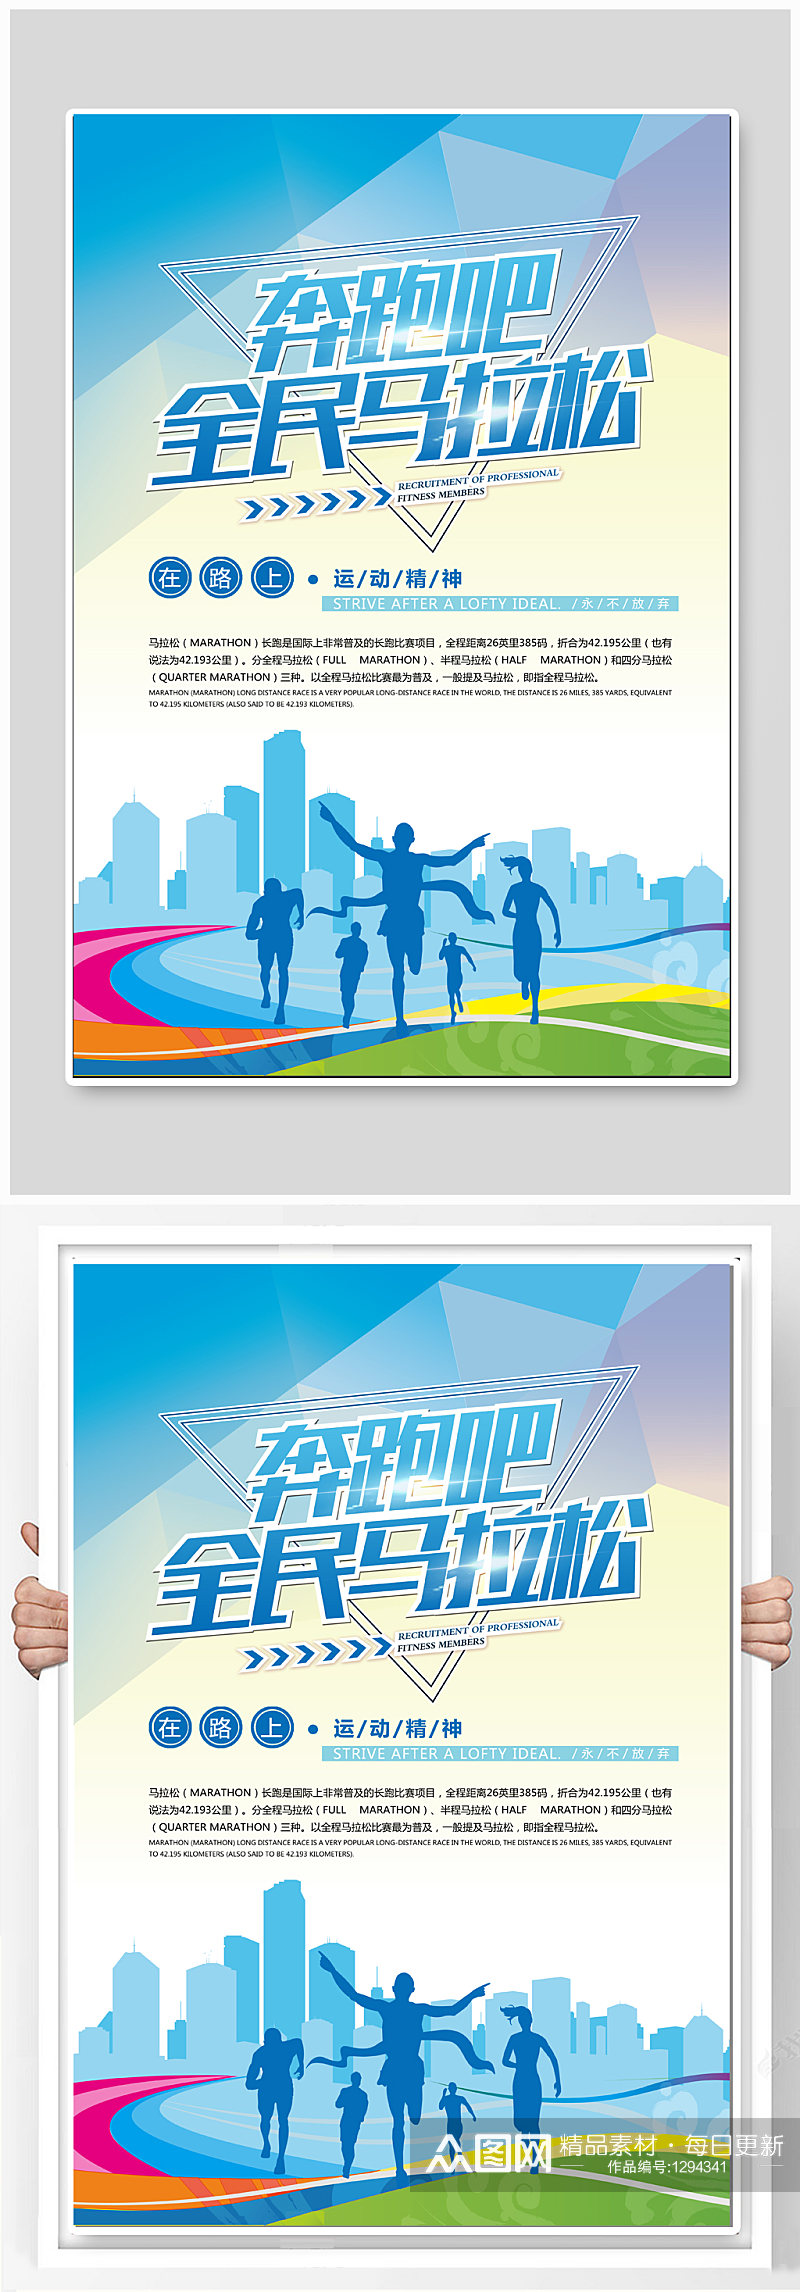 全民马拉松体育运动海报展板素材